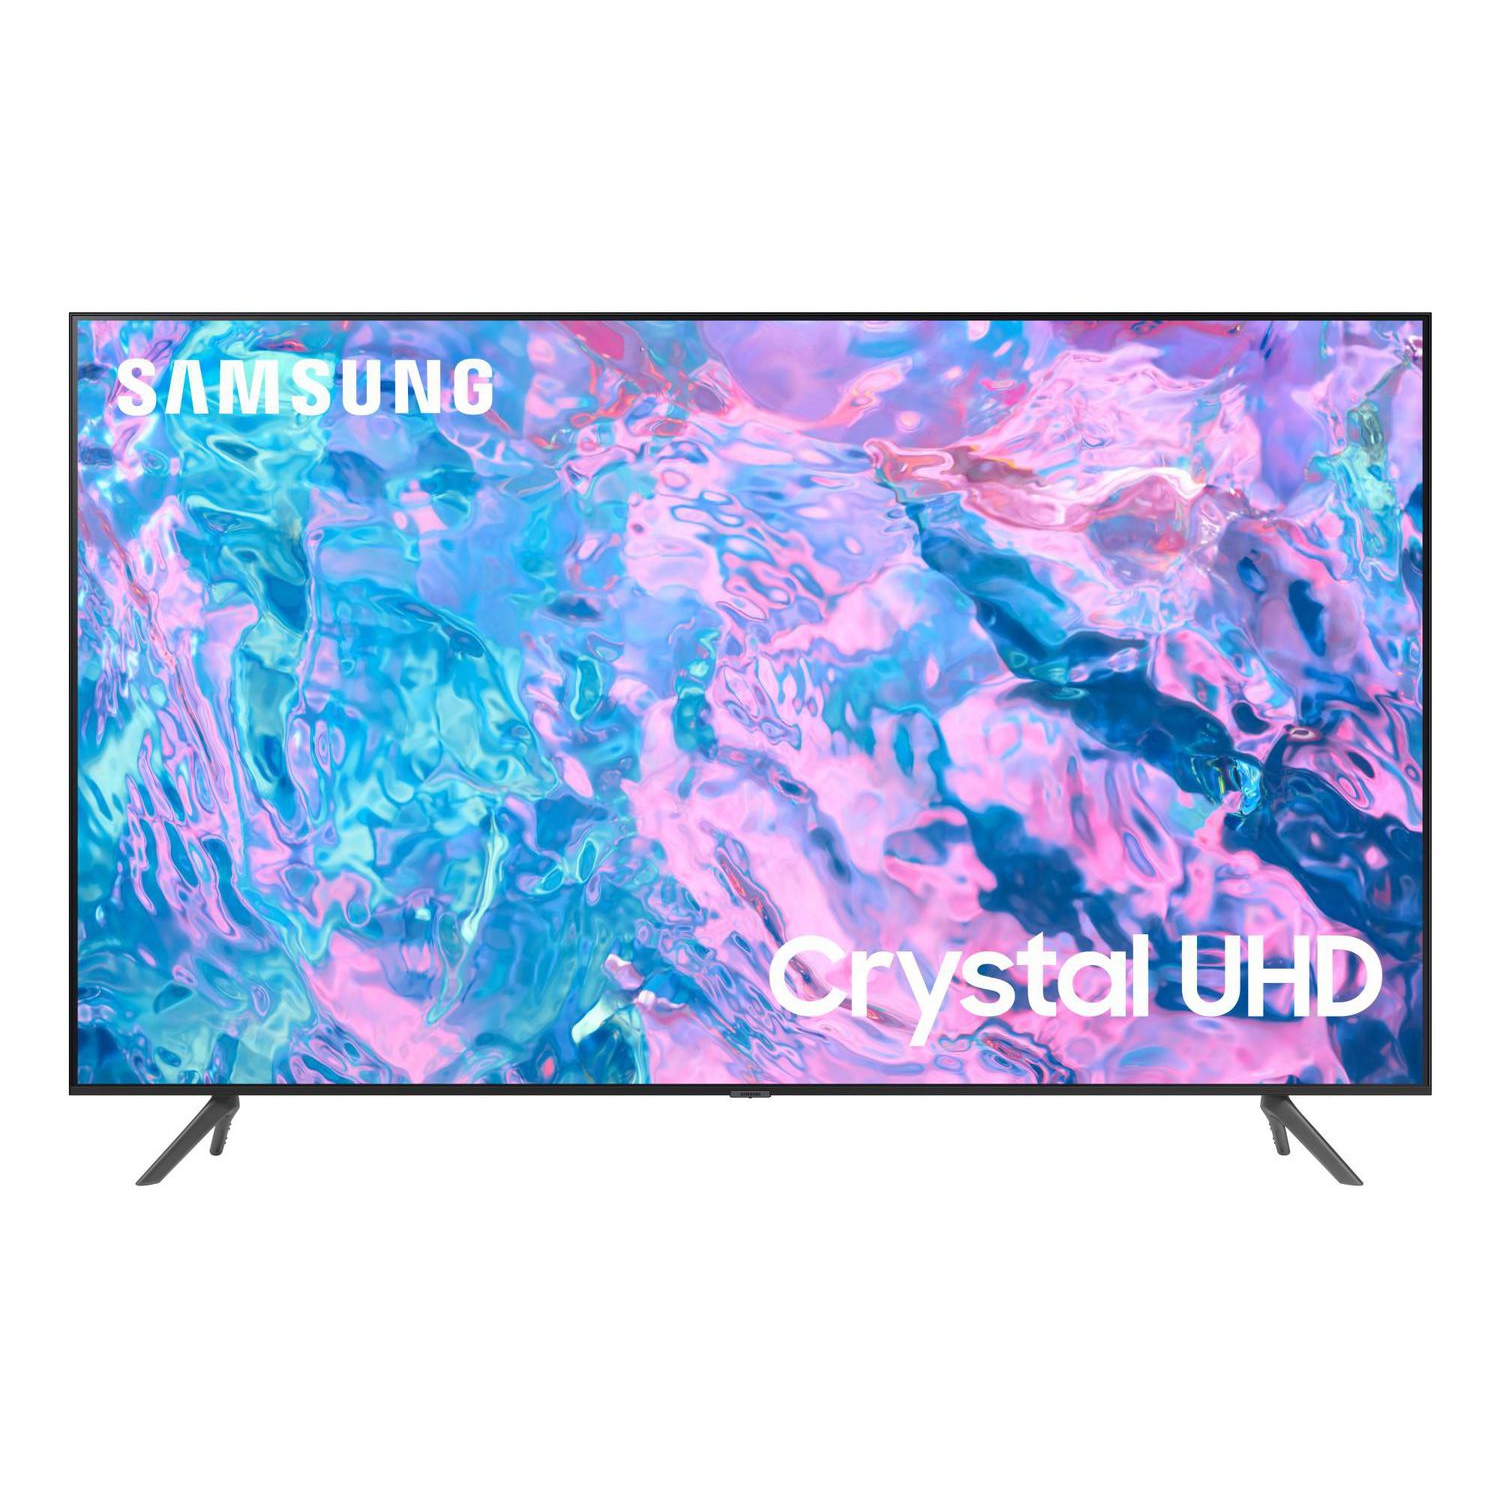 REFURBISHED (GOOD) -SAMSUNG 75" Class CU7000B Crystal UHD 4K UHD Smart TV (UN75CU7000B)